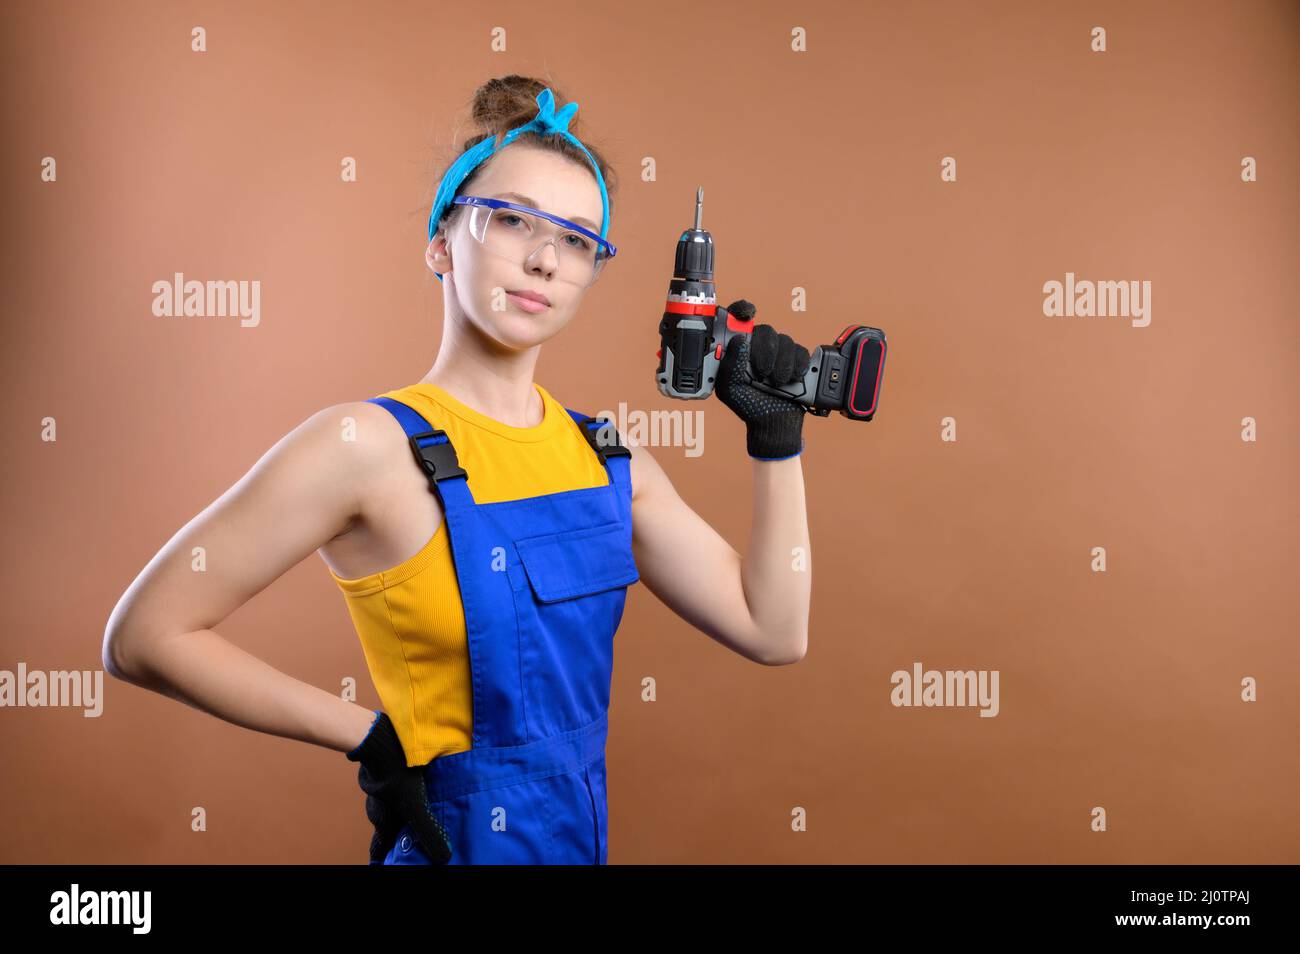 Una joven mujer de handyman muy divertida en una camiseta de tirantes amarilla y monos de trabajo azules con guantes y gafas sobre un fondo marrón claro. Foto de stock